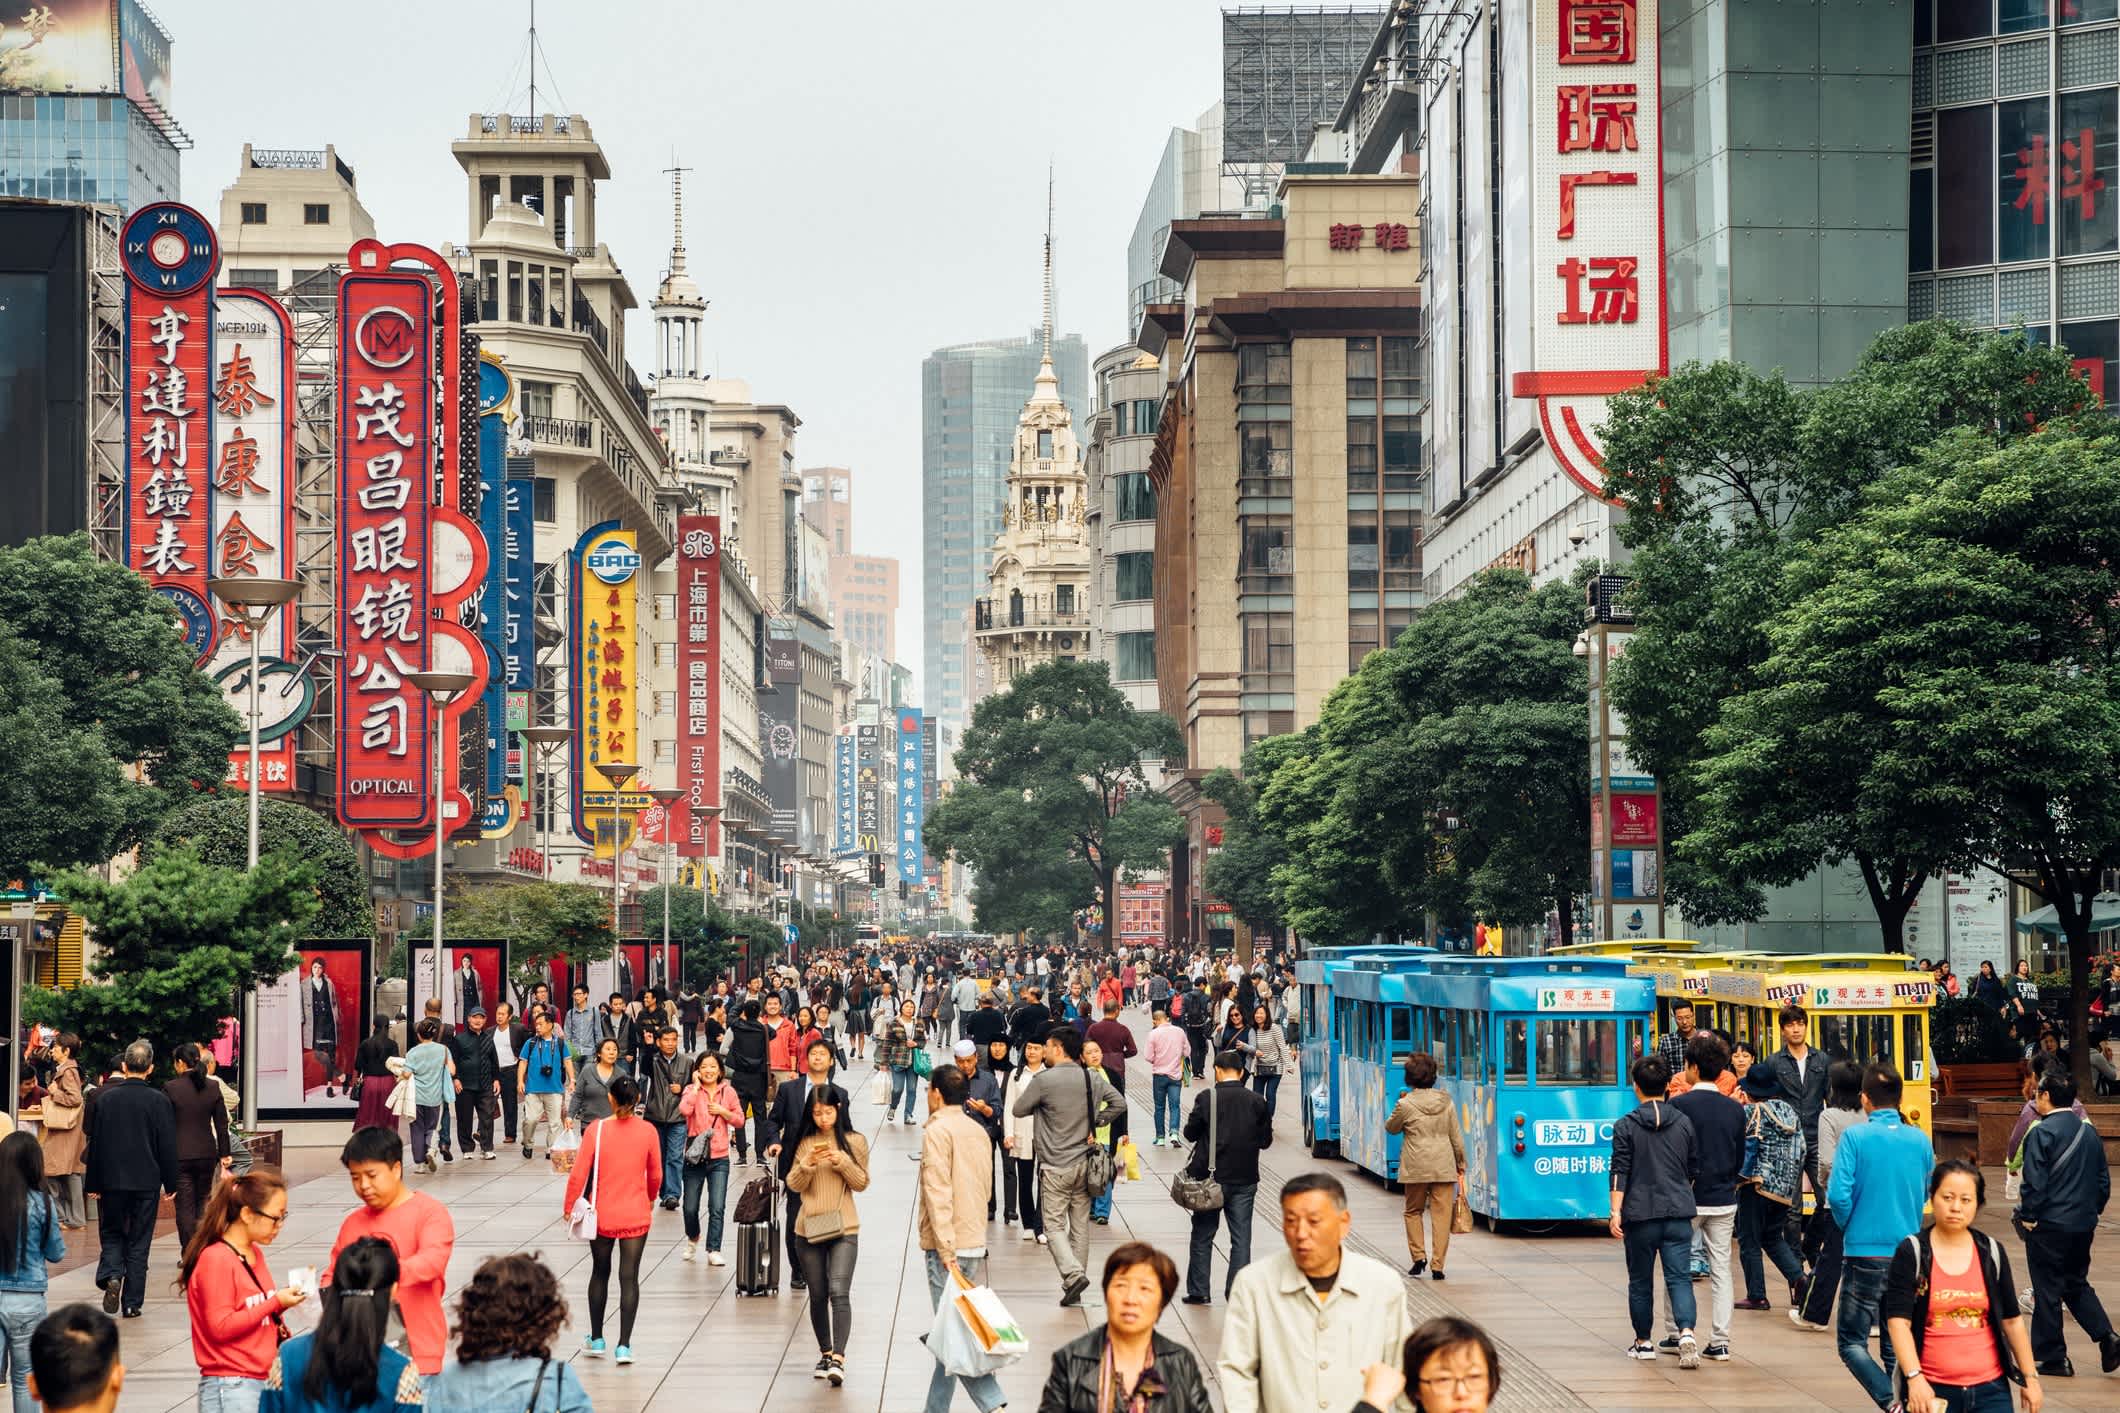 Nanjing Road in Shanghai - eines der belebtesten Einkaufsviertel der Welt, China